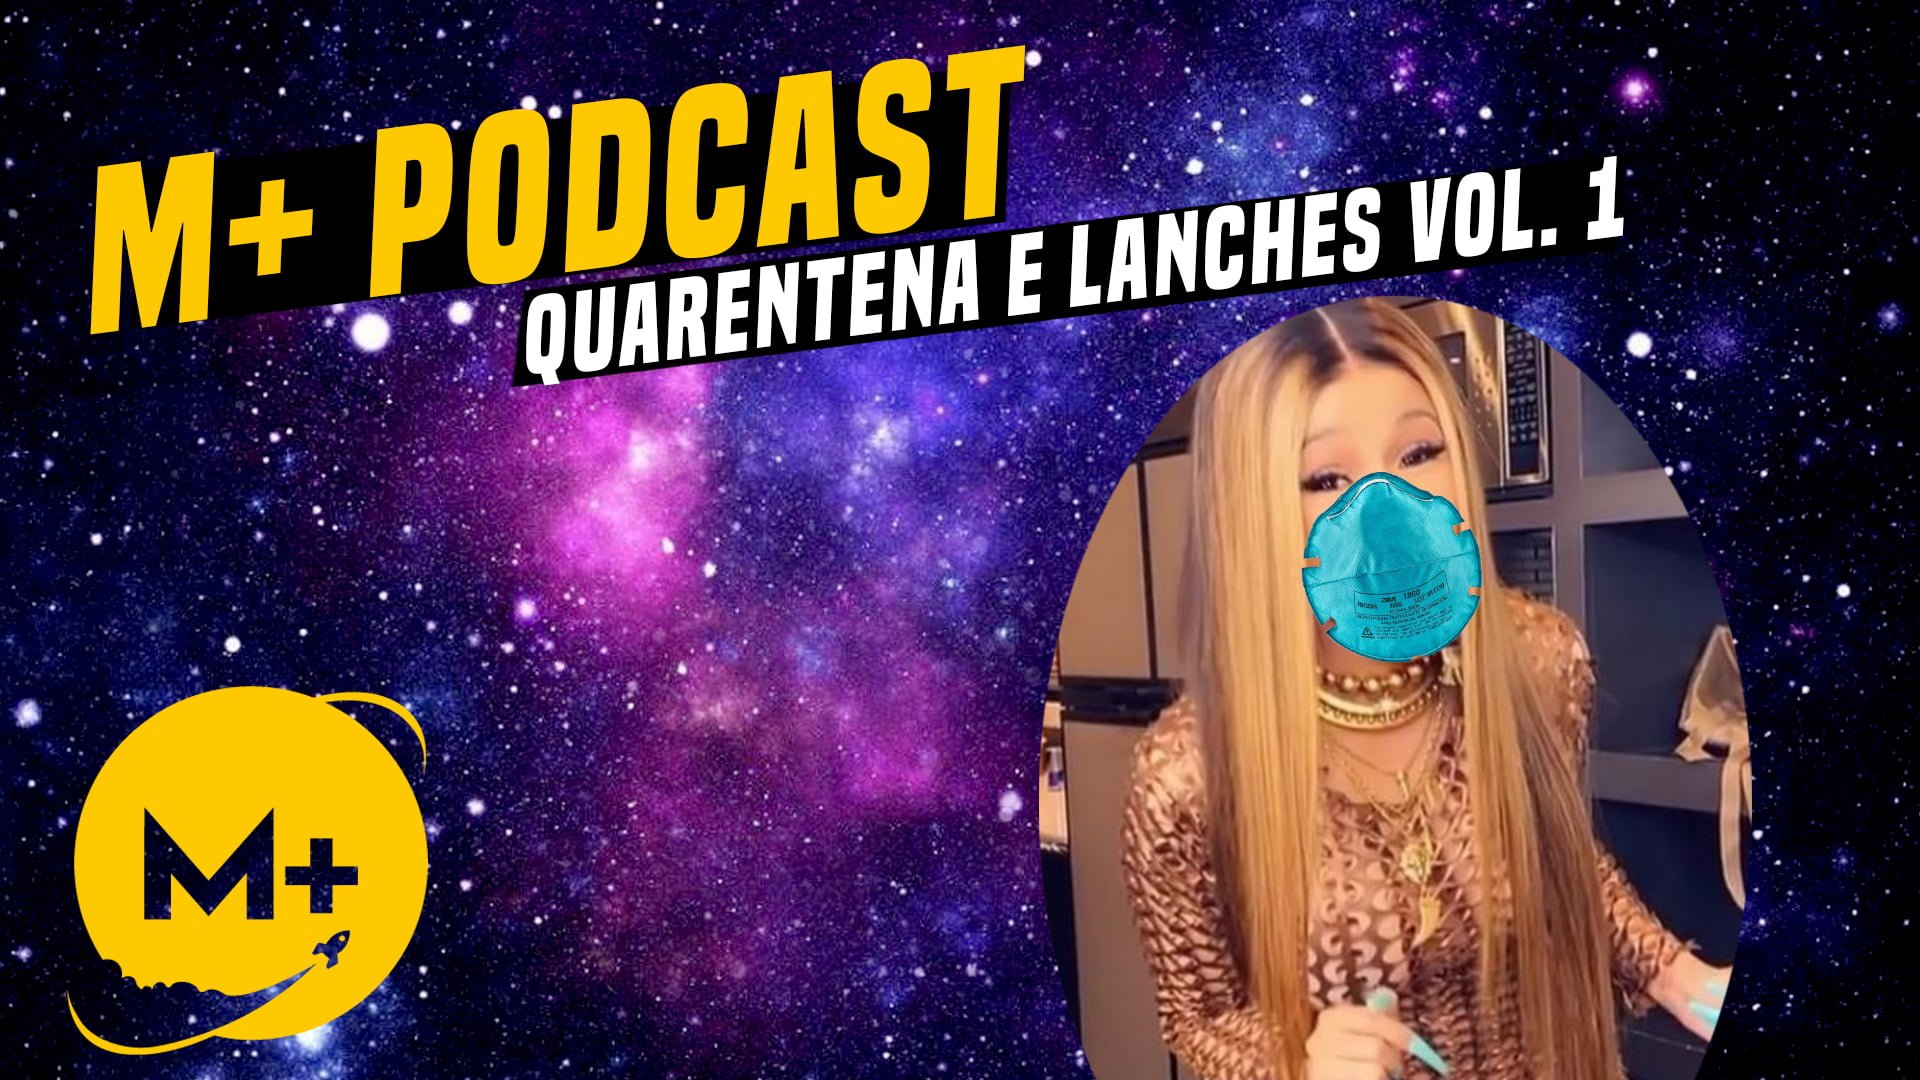 Podcast M+ Quarentena e Lanches Vol. 1